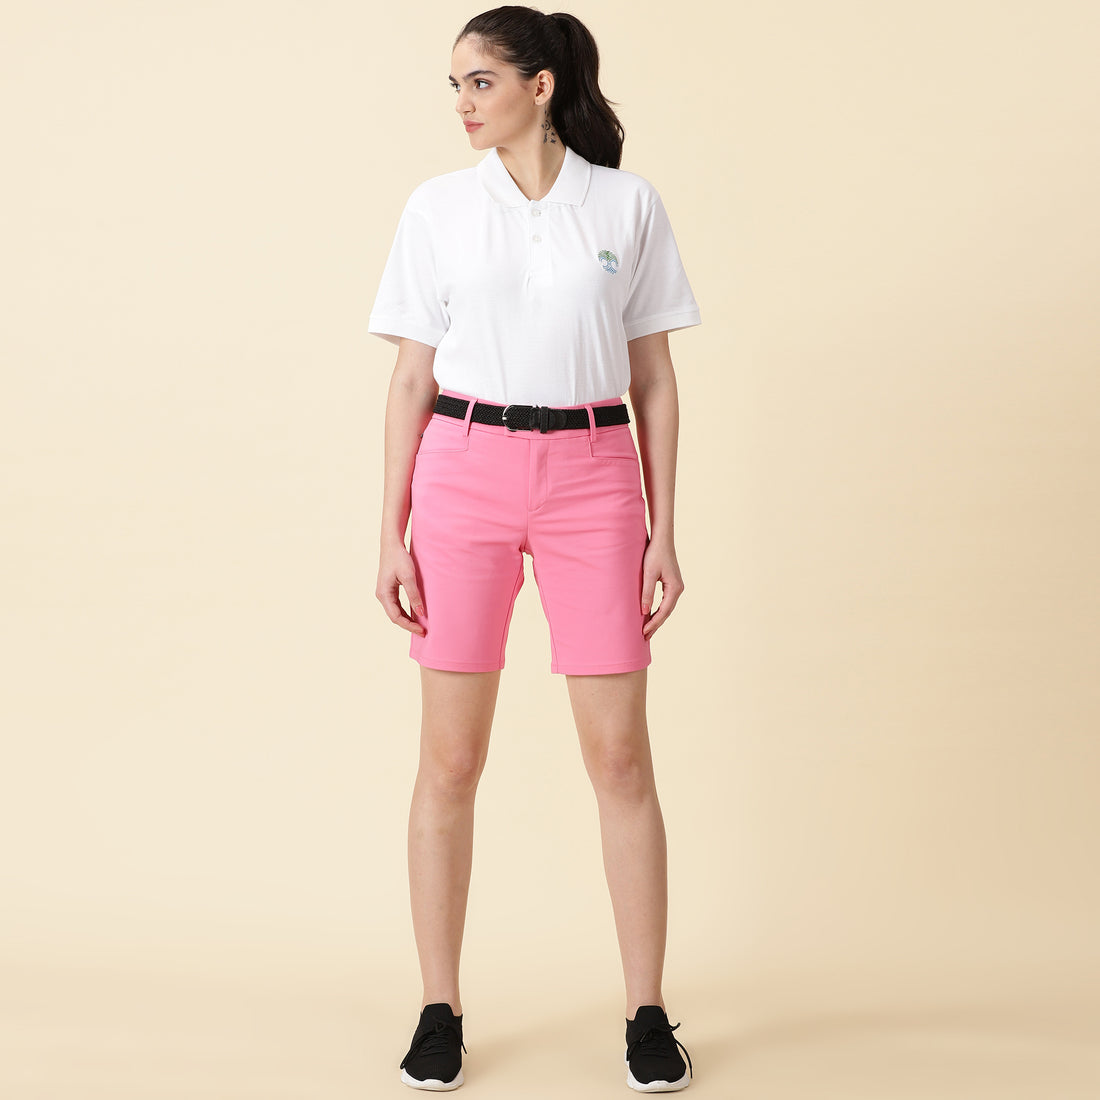 Slim Fit Golf Shorts - Bubble Gum Pink